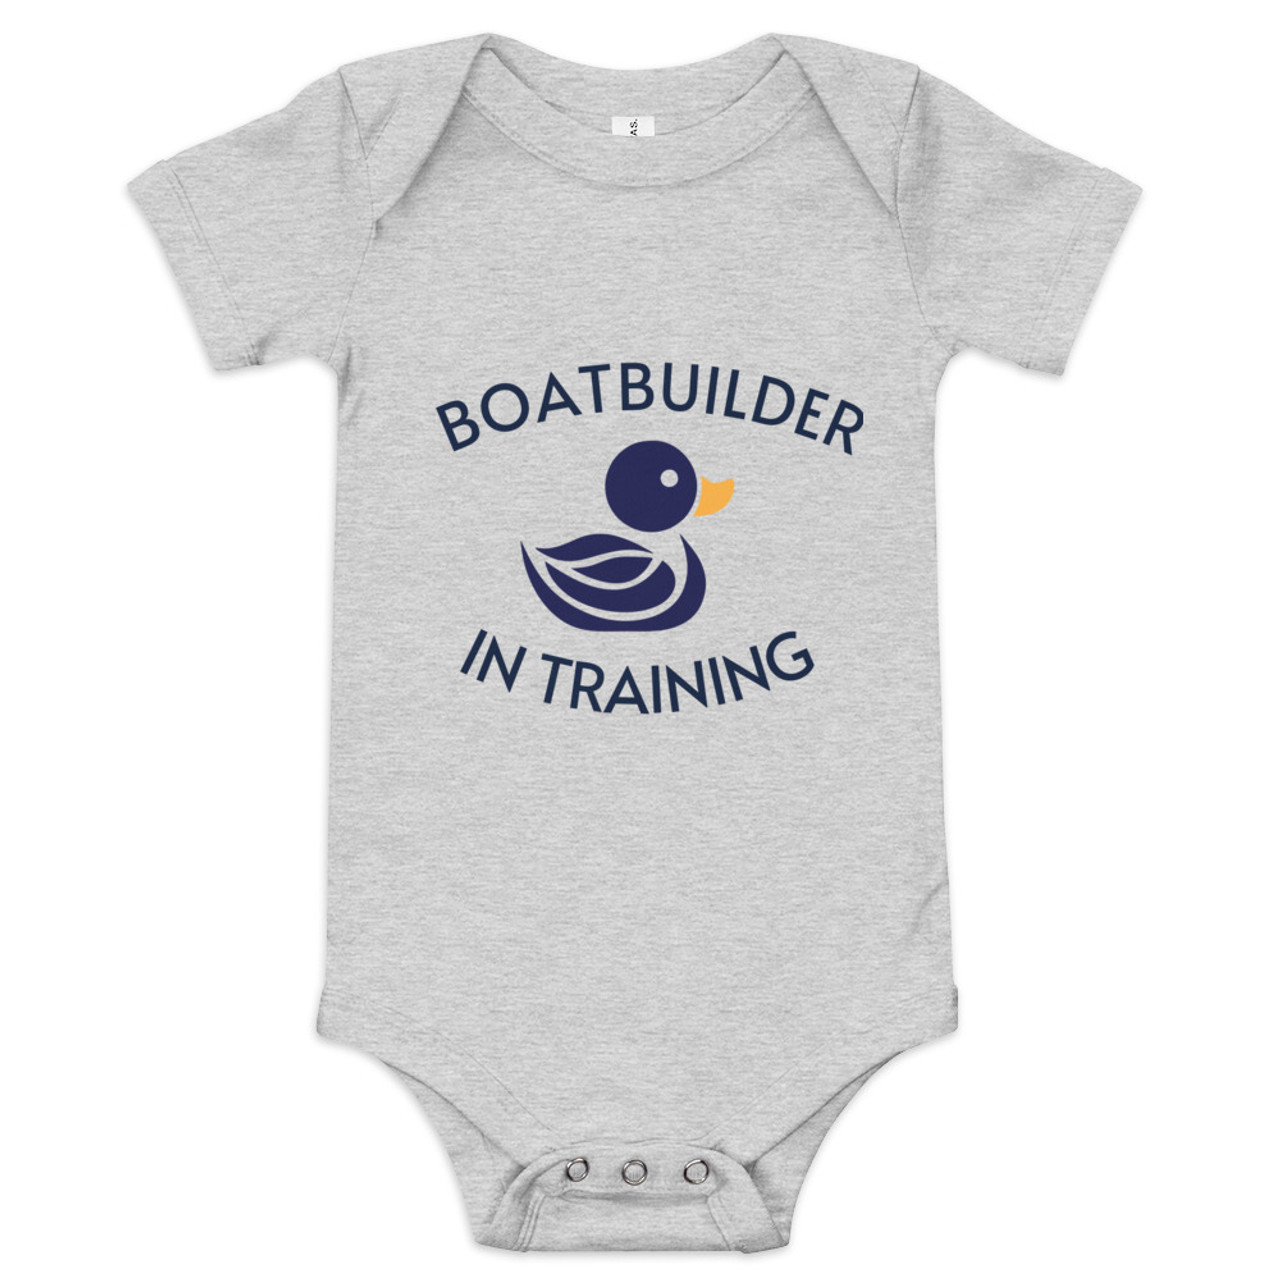 Boatbuilder in Training Baby Onesie